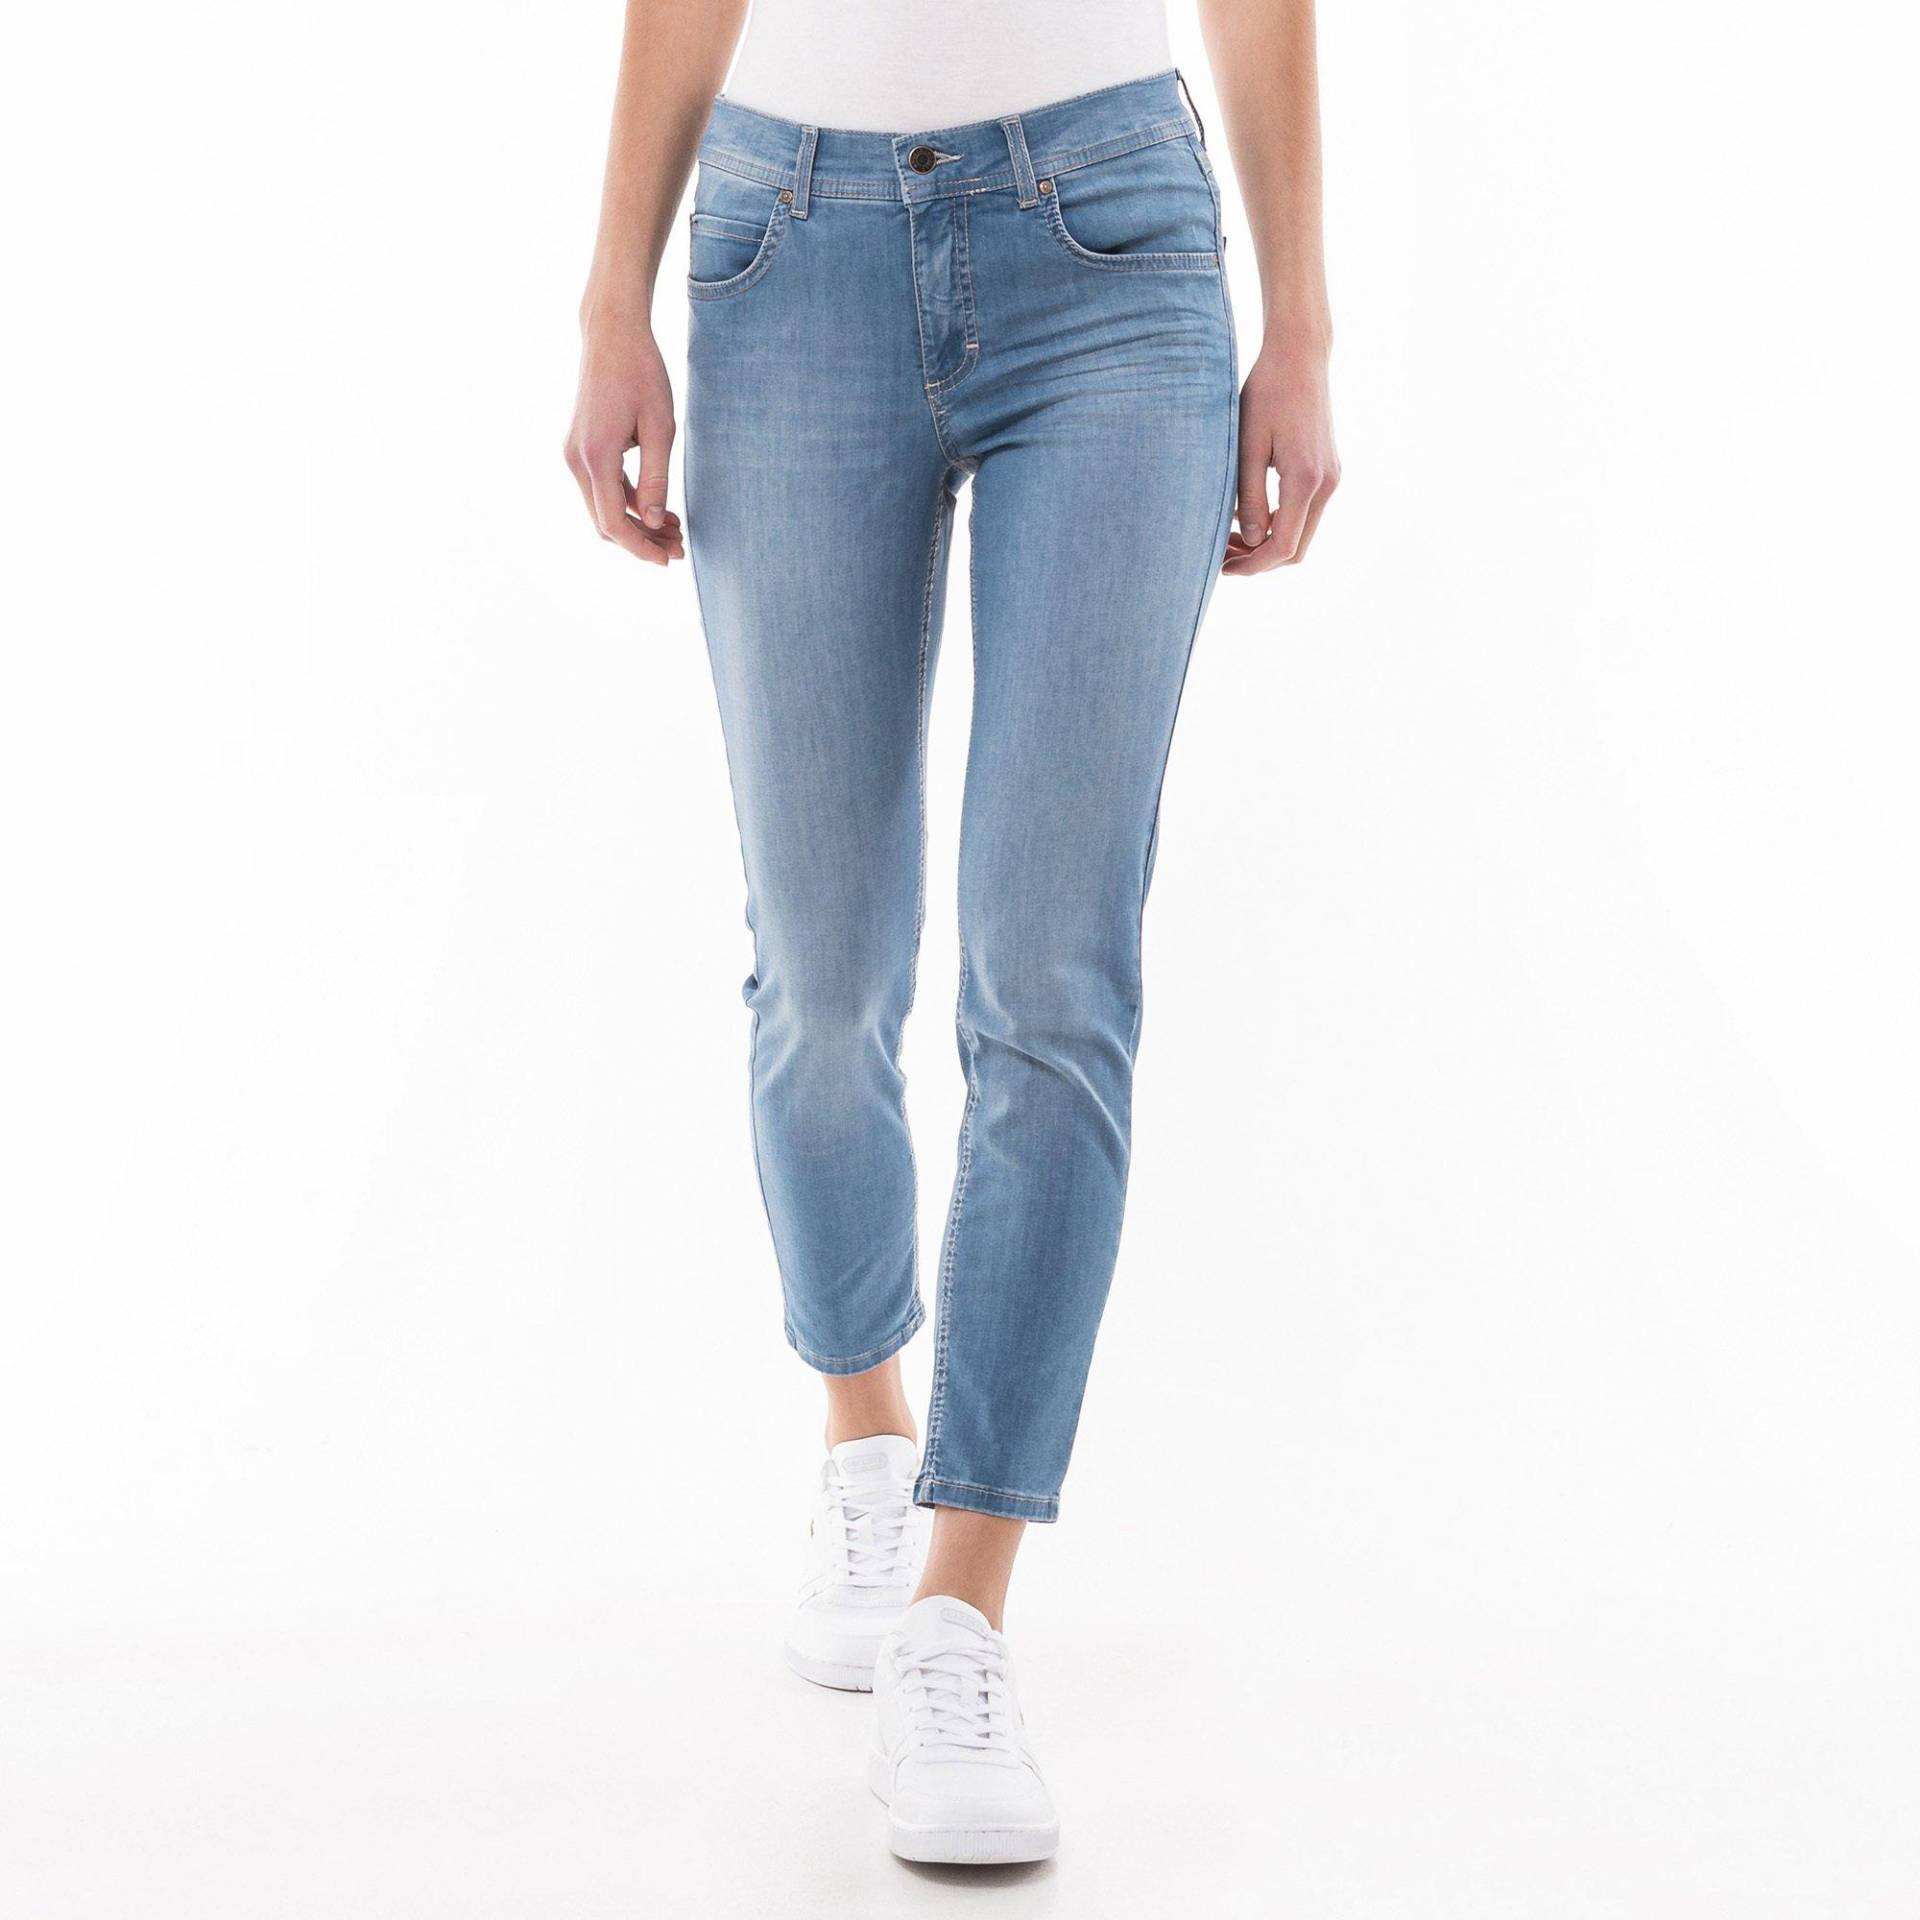 Jeans, Skinny Fit Damen Blau Denim 42 von ANGELS